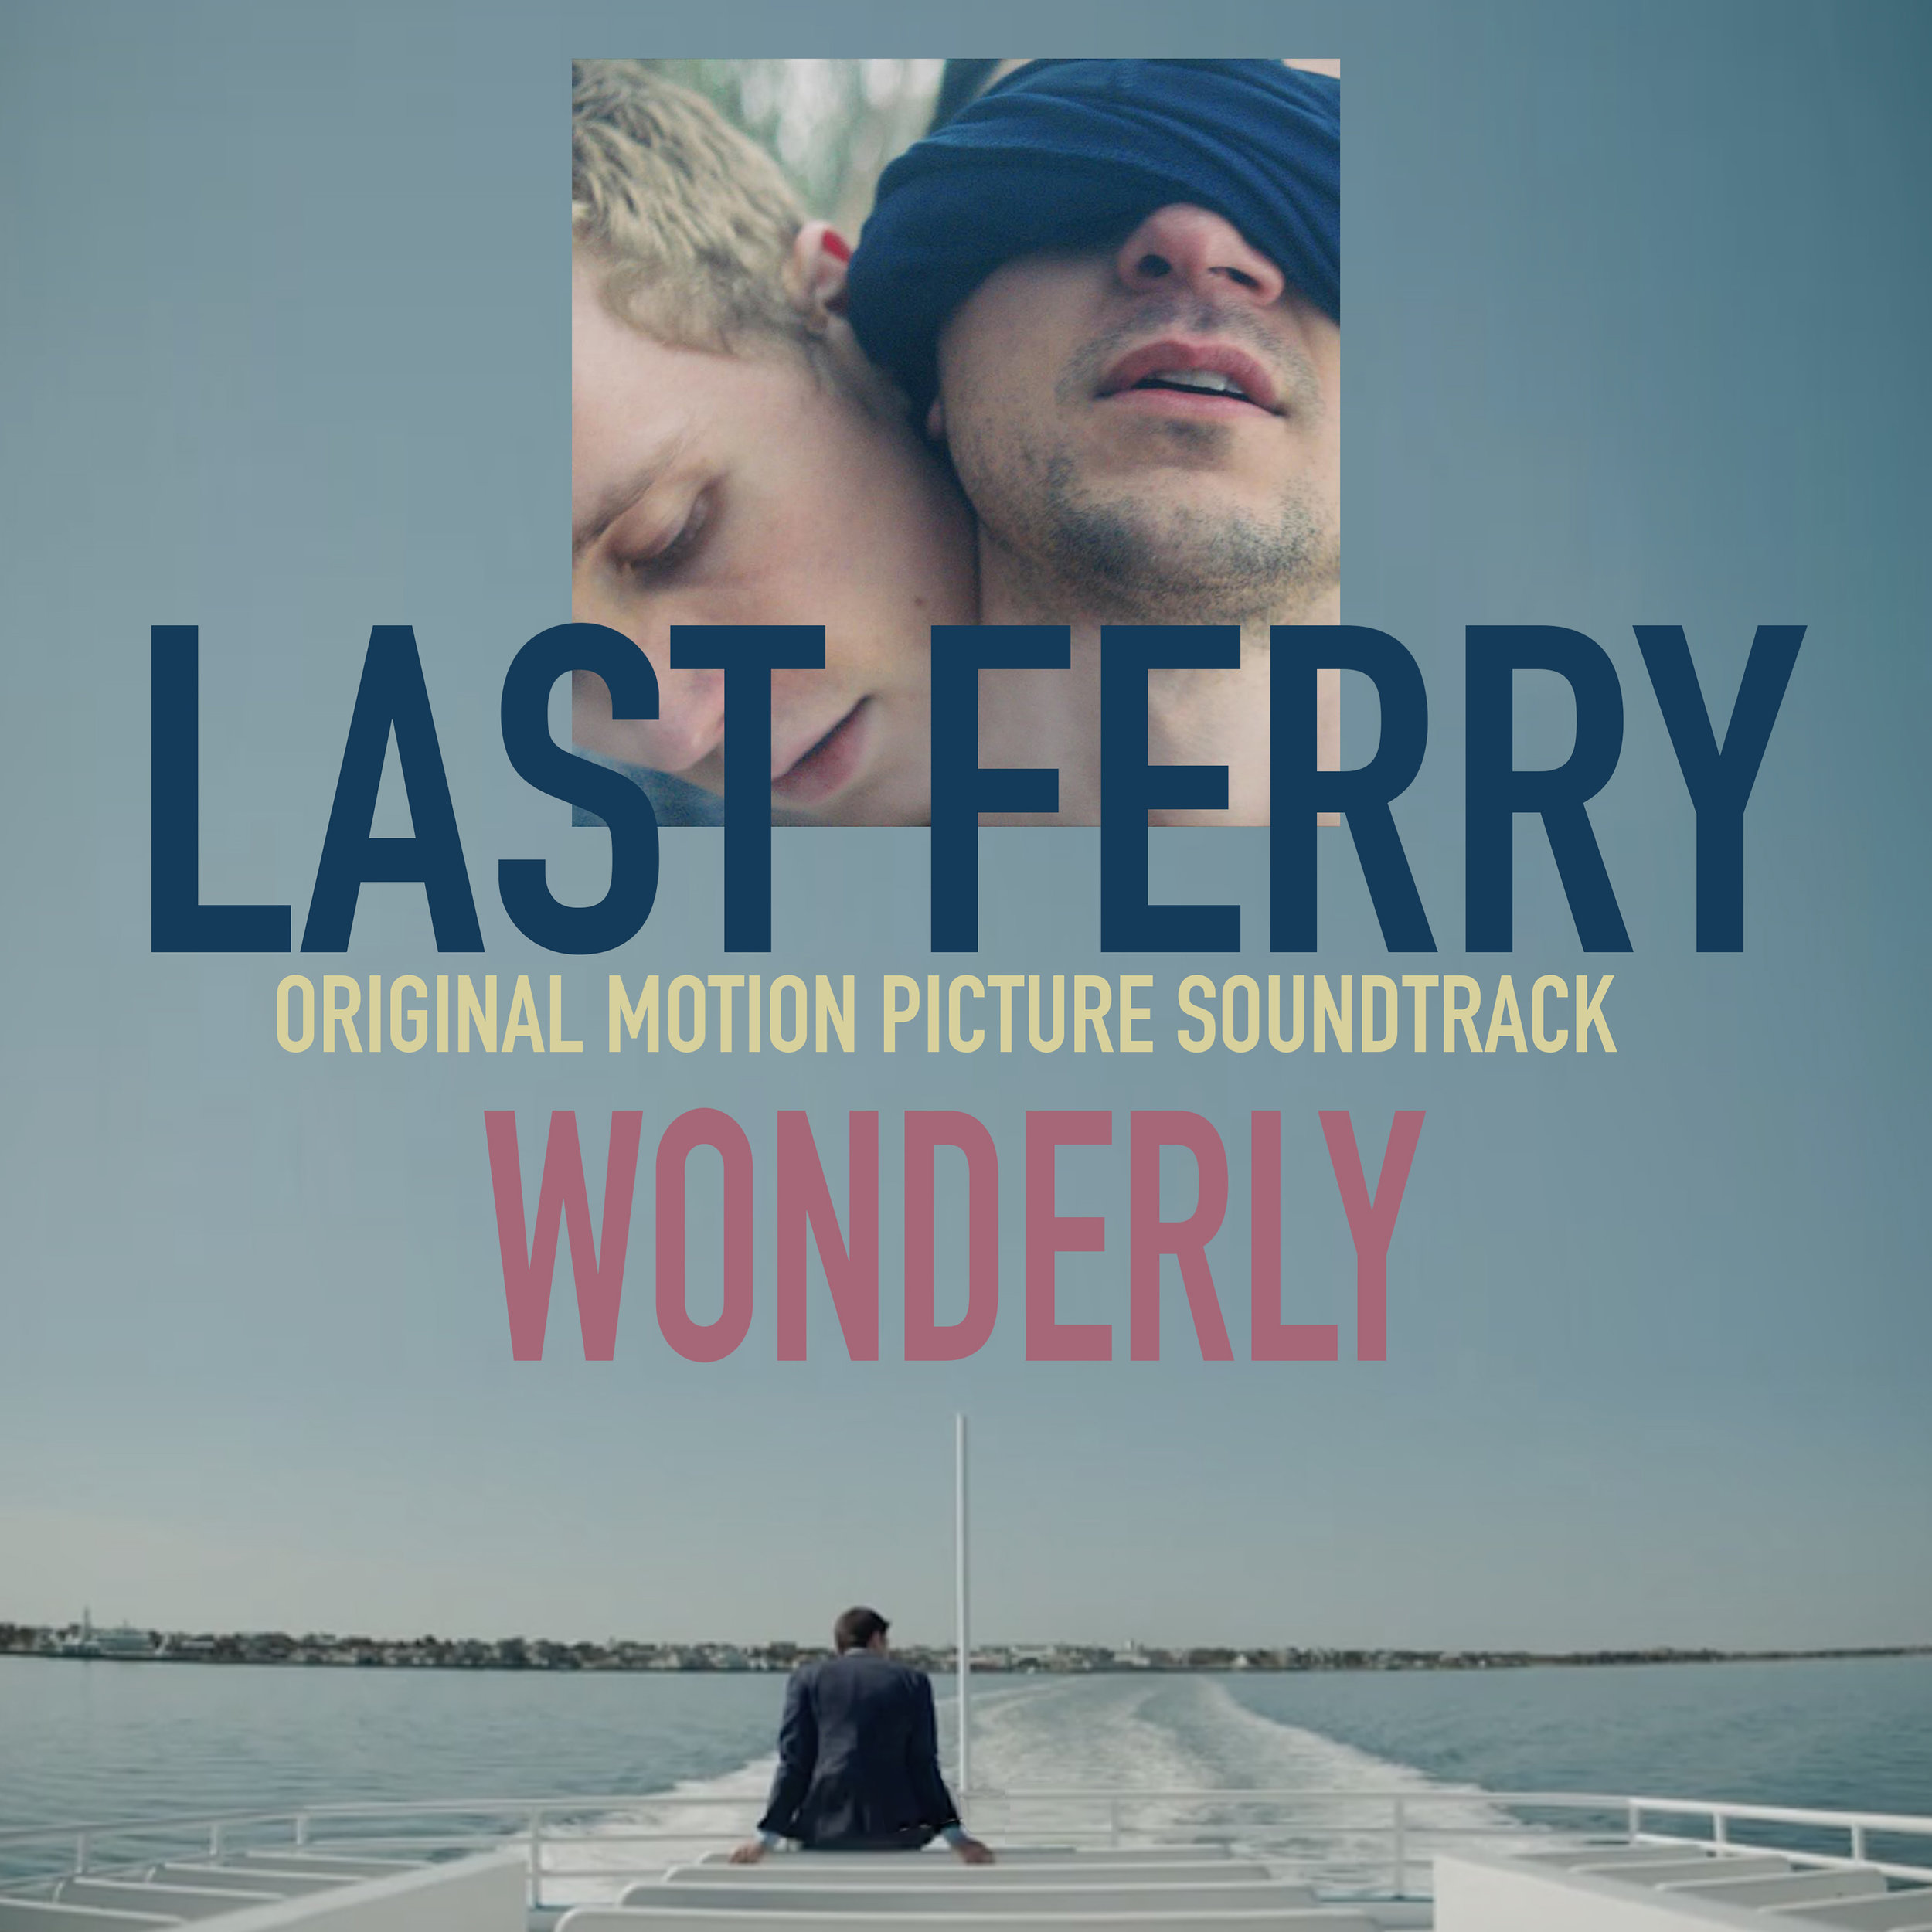 Last Ferry cd cover1.jpg